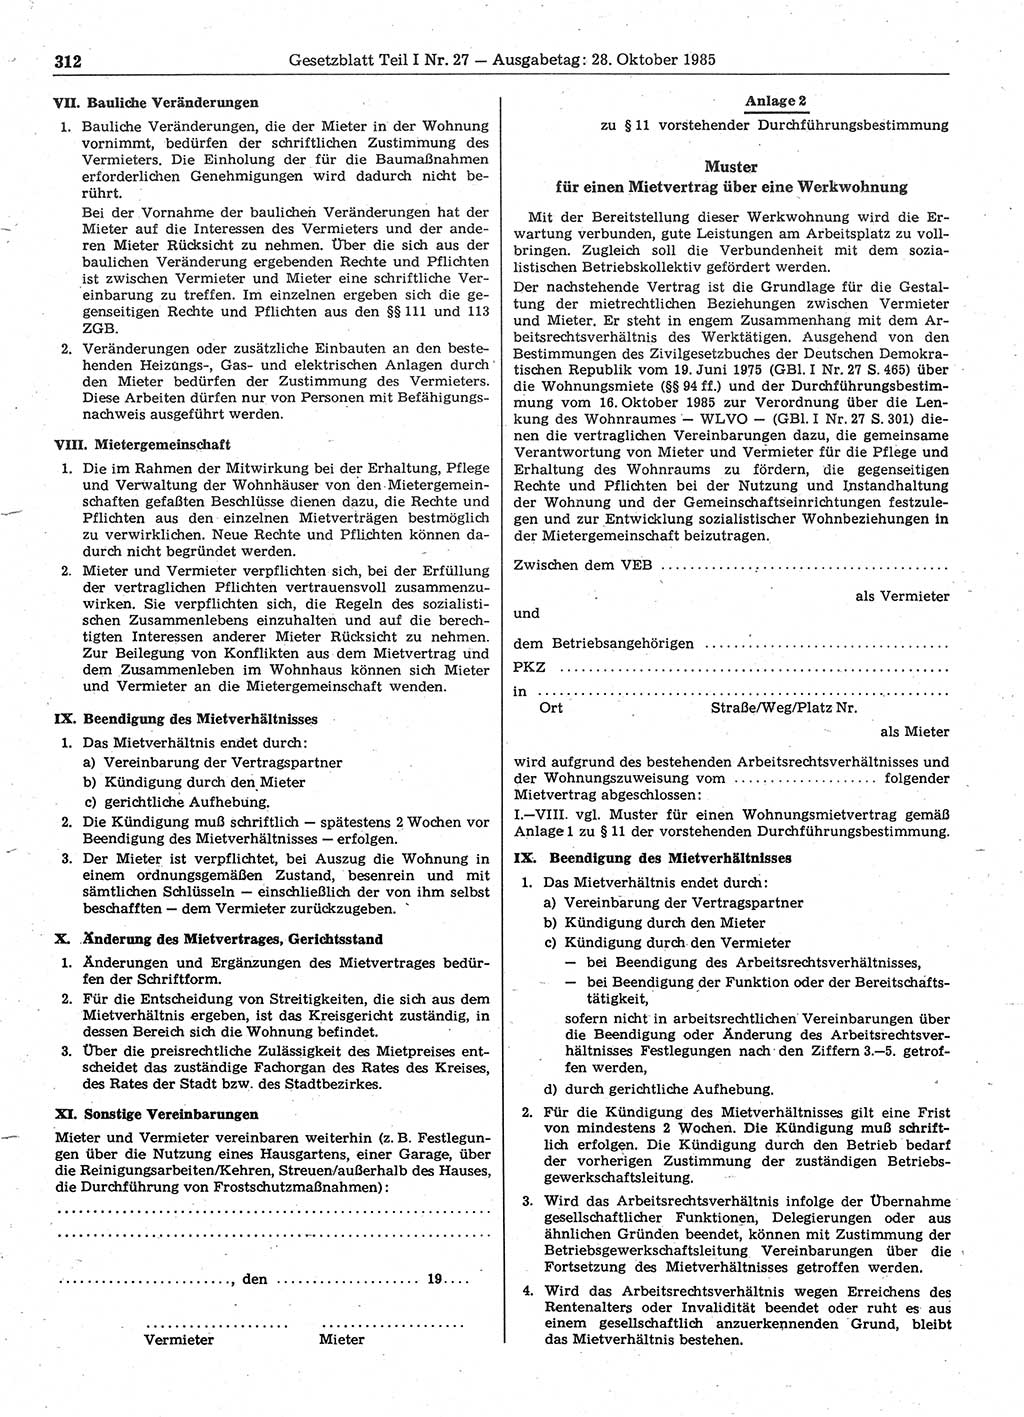 Gesetzblatt (GBl.) der Deutschen Demokratischen Republik (DDR) Teil Ⅰ 1985, Seite 312 (GBl. DDR Ⅰ 1985, S. 312)